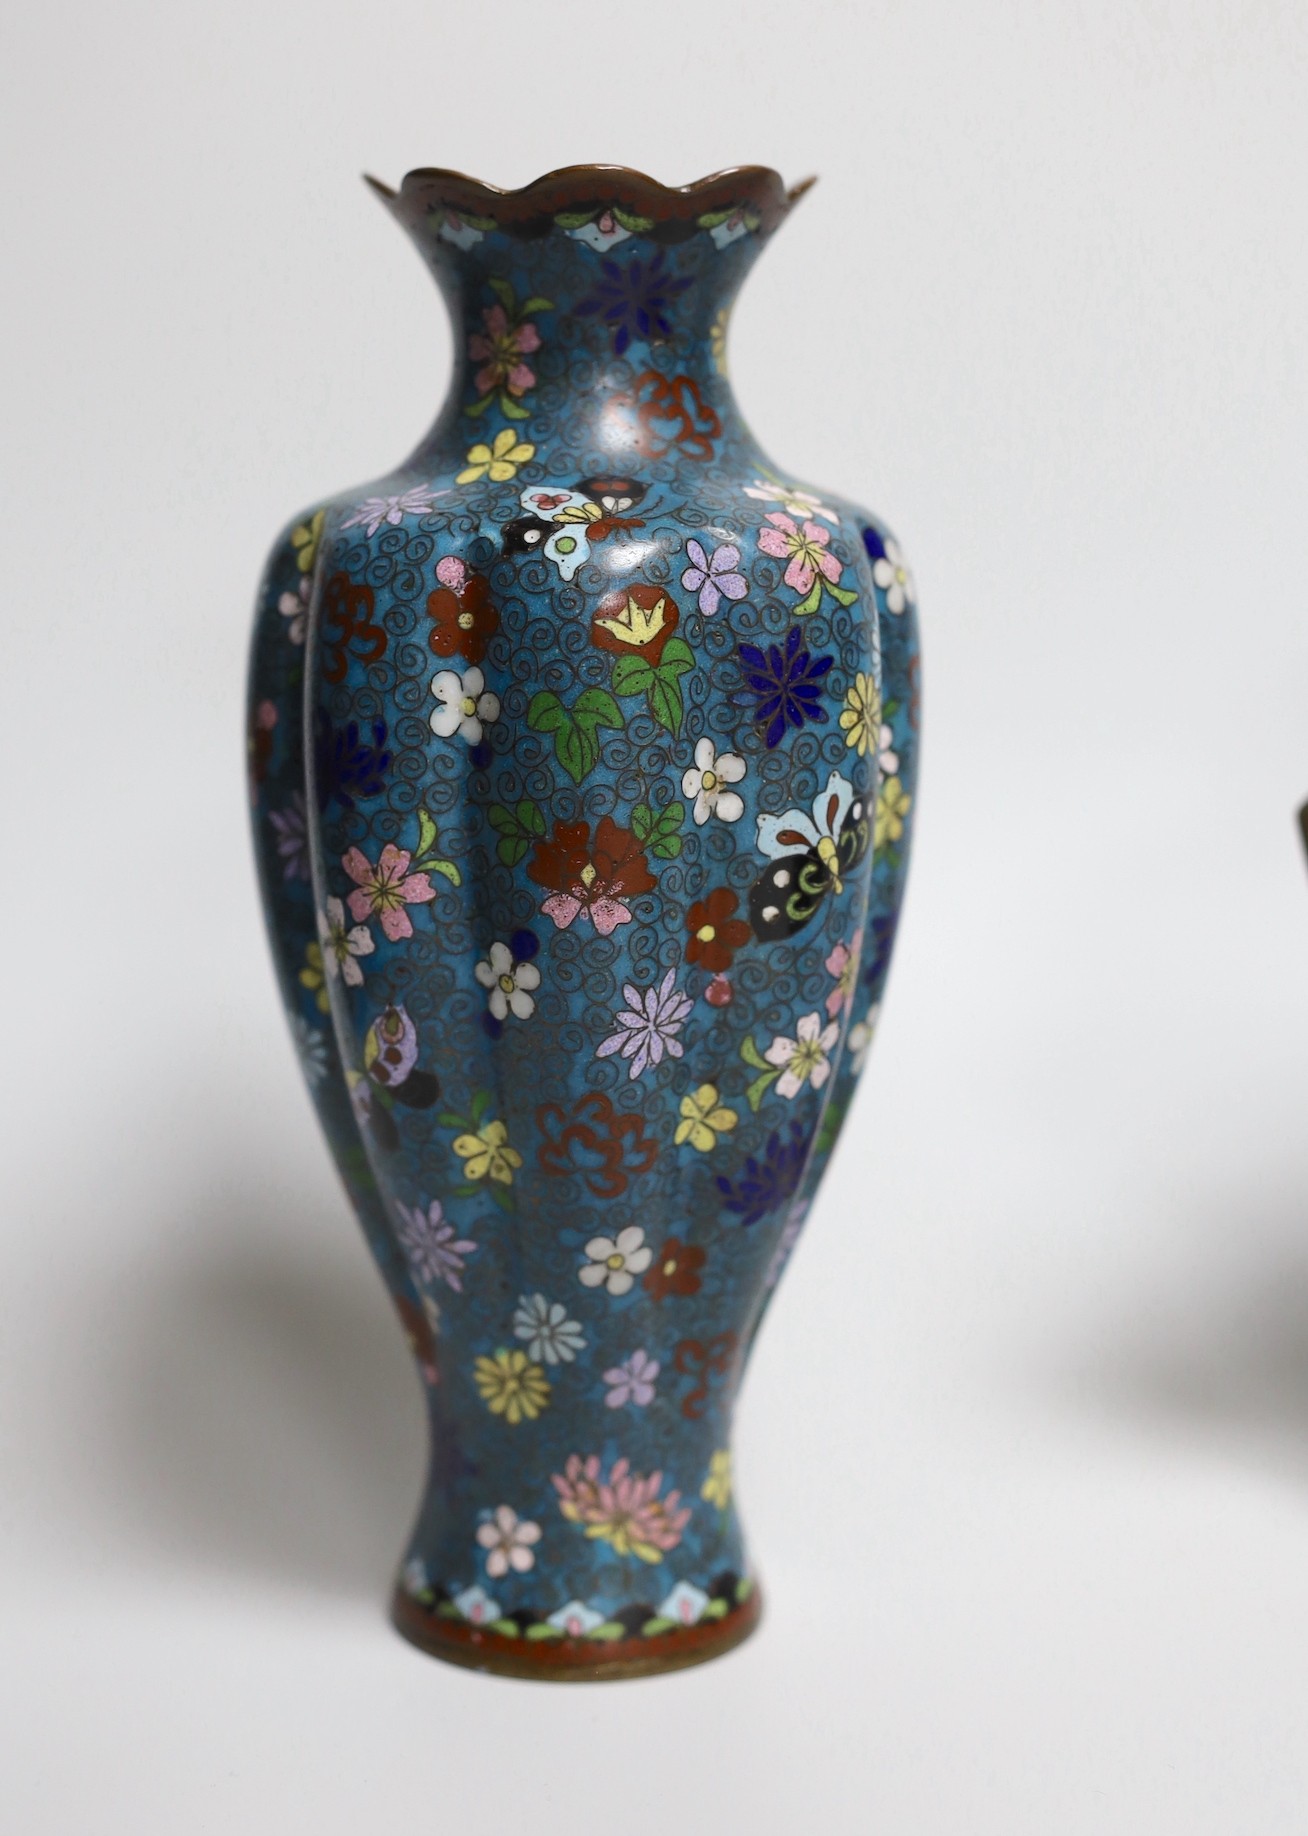 Two pairs of Japanese cloisonné enamel vases and a cloisonné enamel dish tallest 19cm